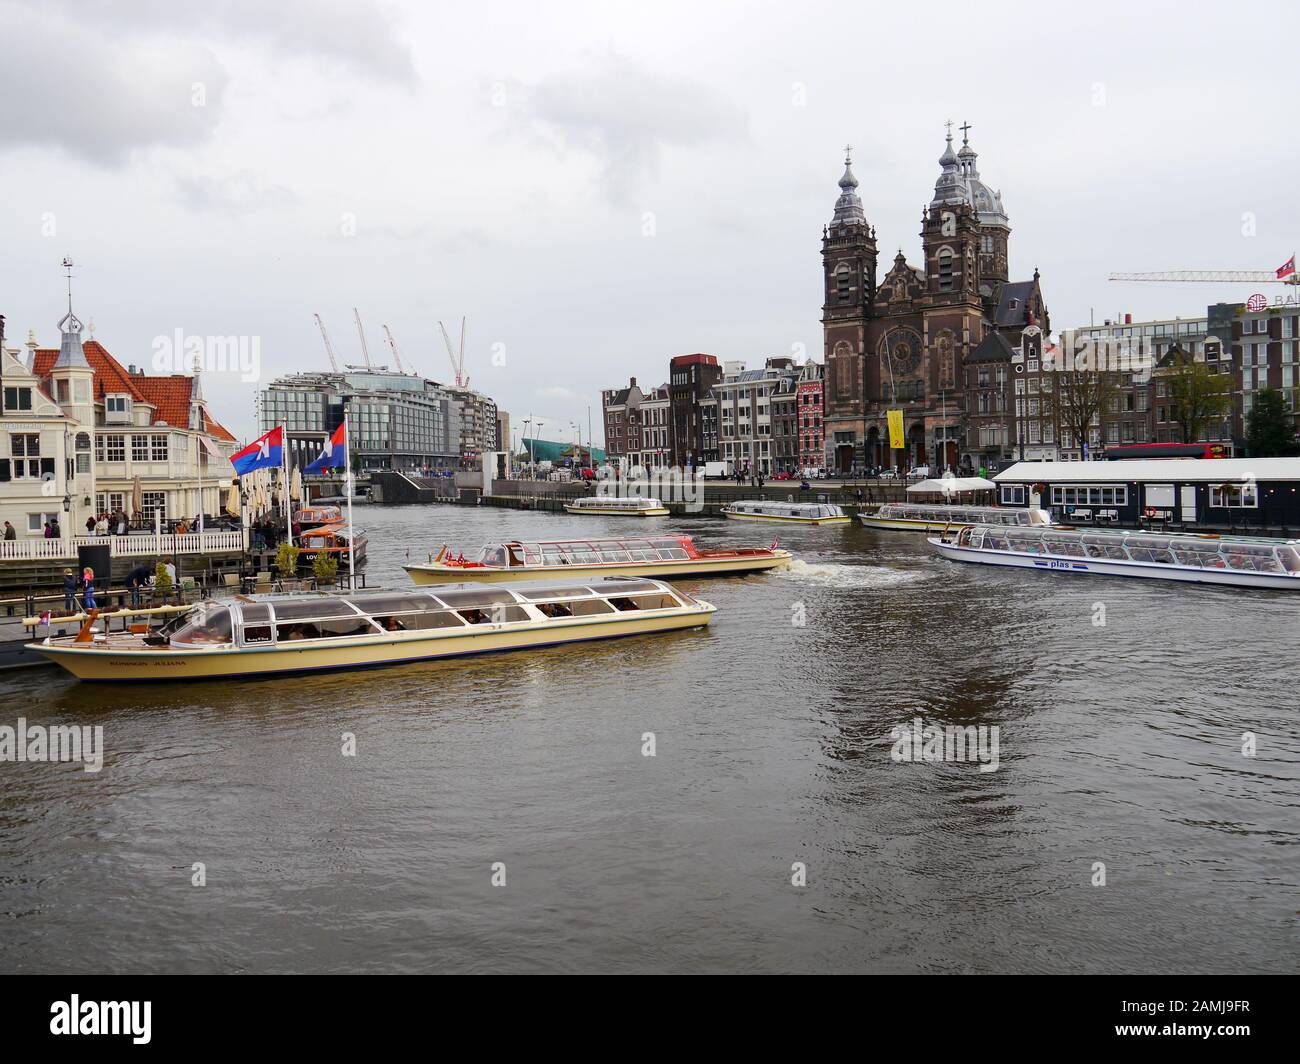 Bateaux touristiques sur un canal dans le centre d'Amsterdam, Pays-Bas Banque D'Images